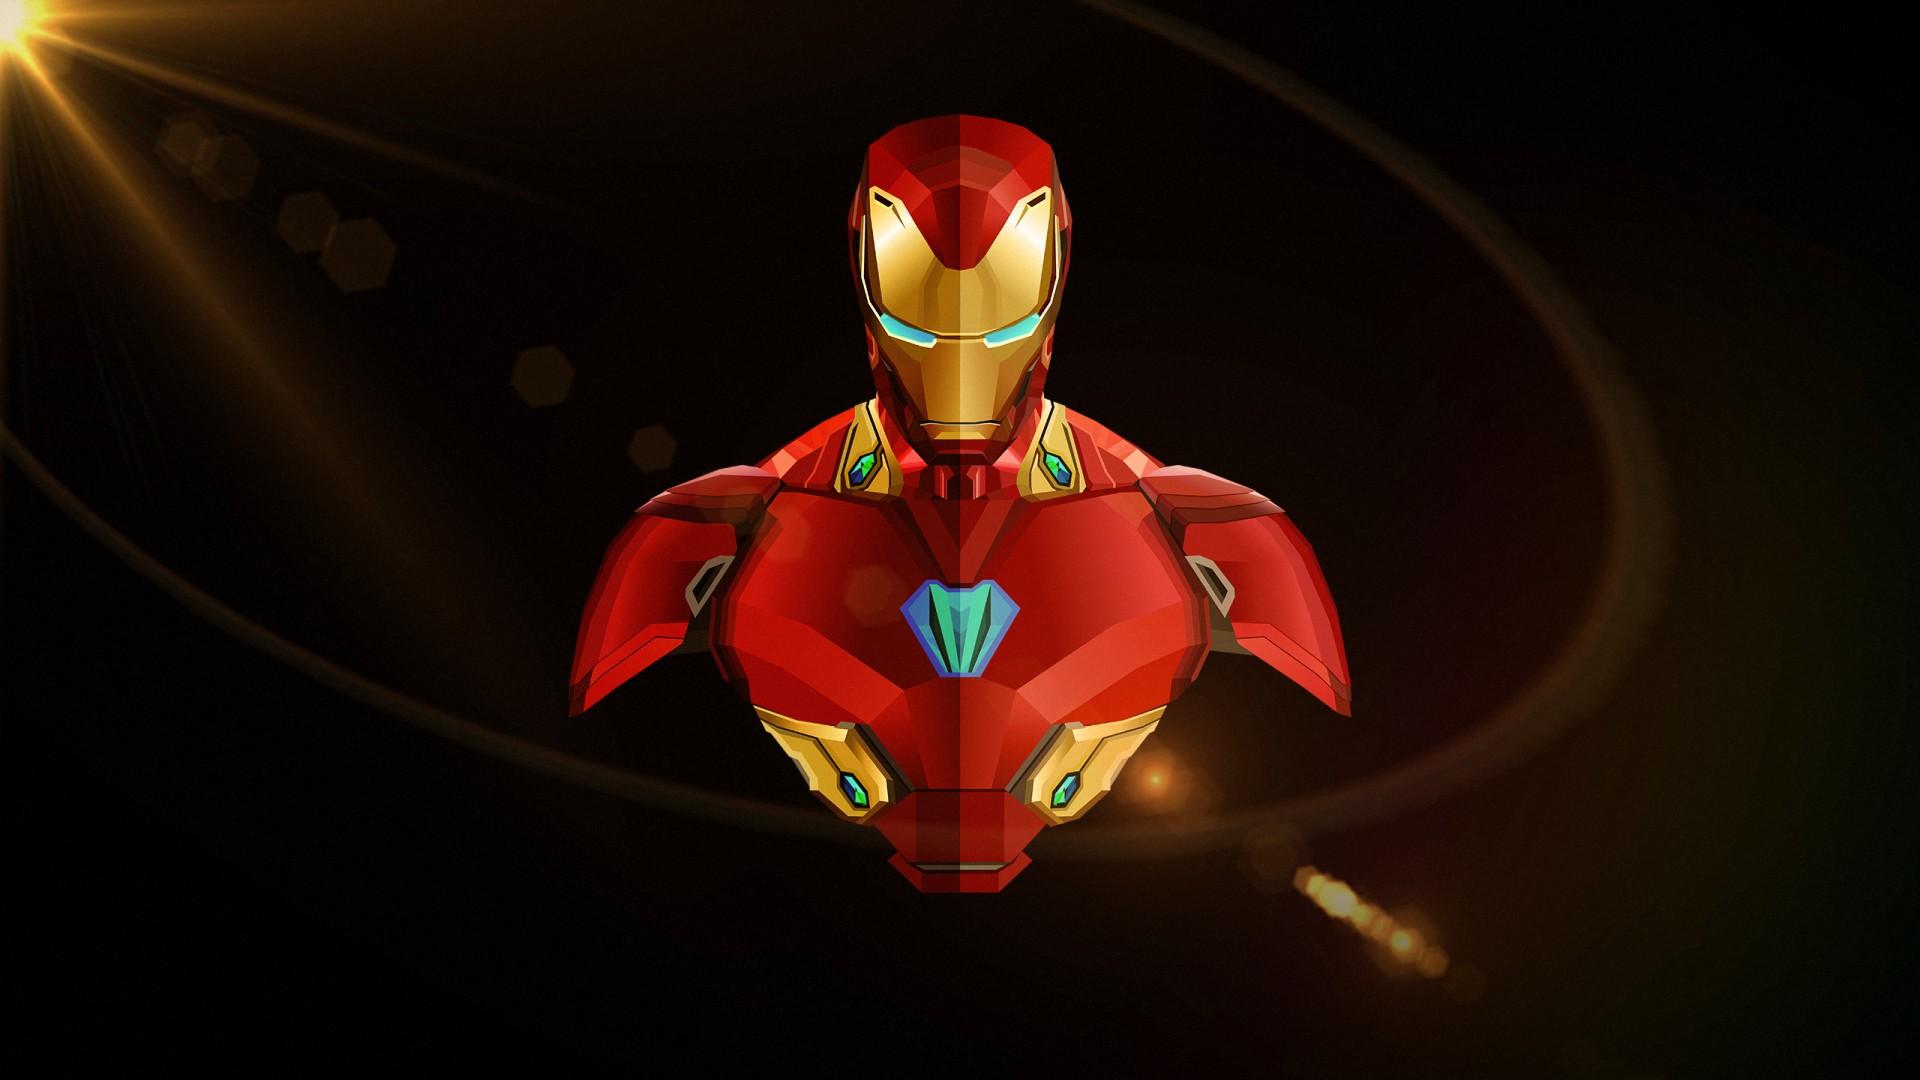 Iron Man Avengers Infinity War Minimal Wallpaper</a> Wallpaper